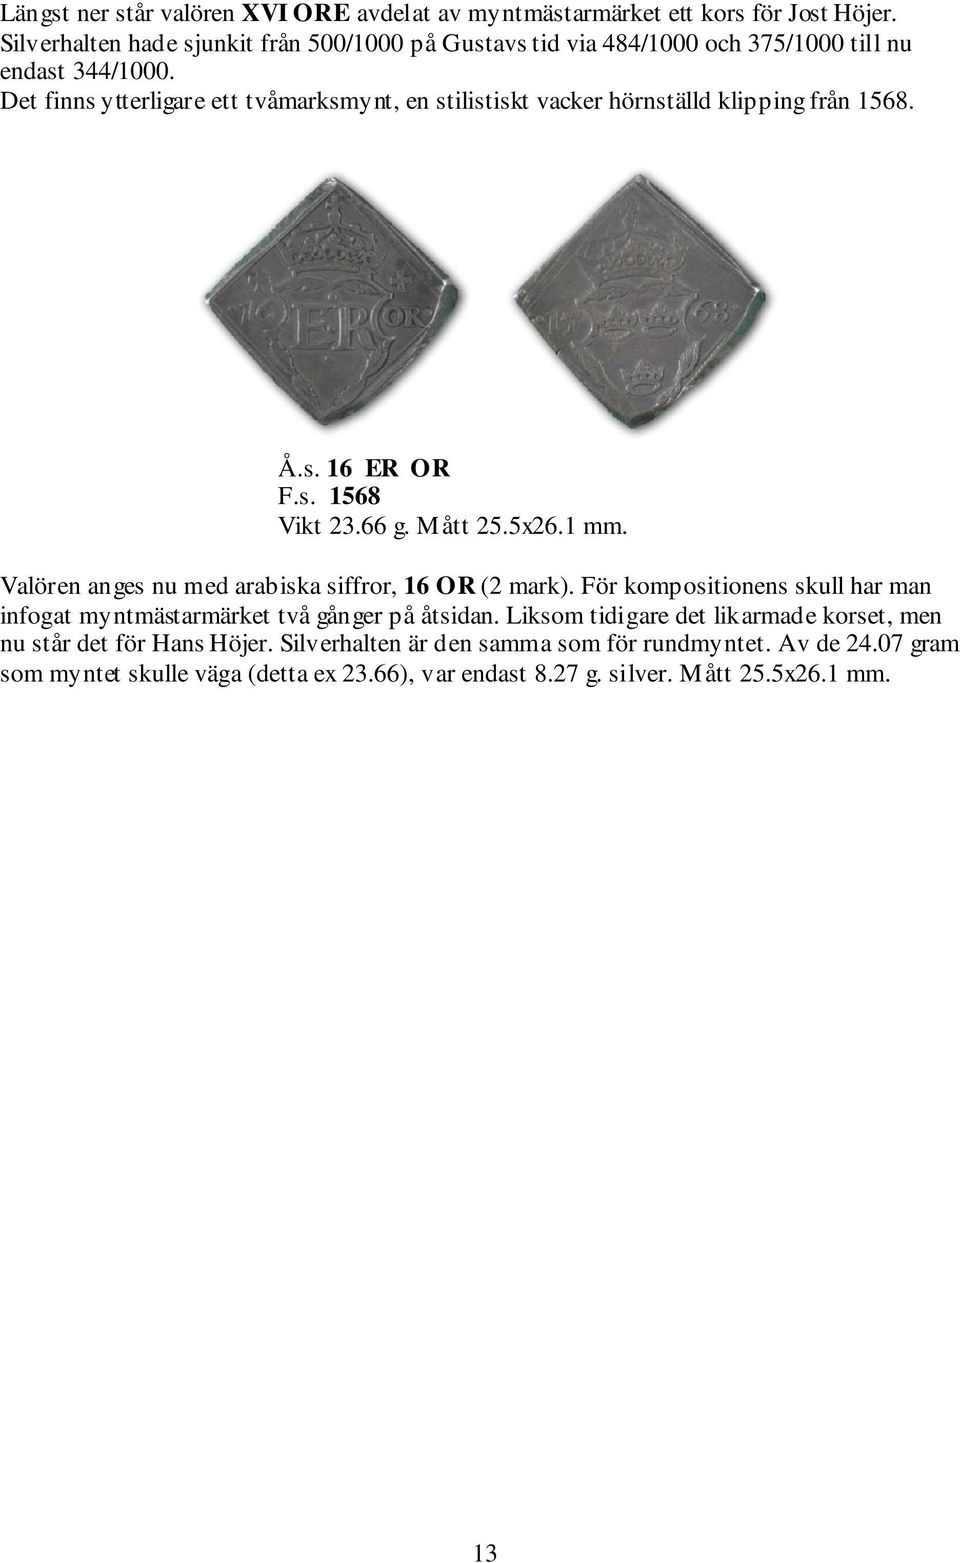 Det finns ytterligare ett tvåmarksmynt, en stilistiskt vacker hörnställd klipping från 1568. Å.s. 16 ER OR F.s. 1568 Vikt 23.66 g. Mått 25.5x26.1 mm.